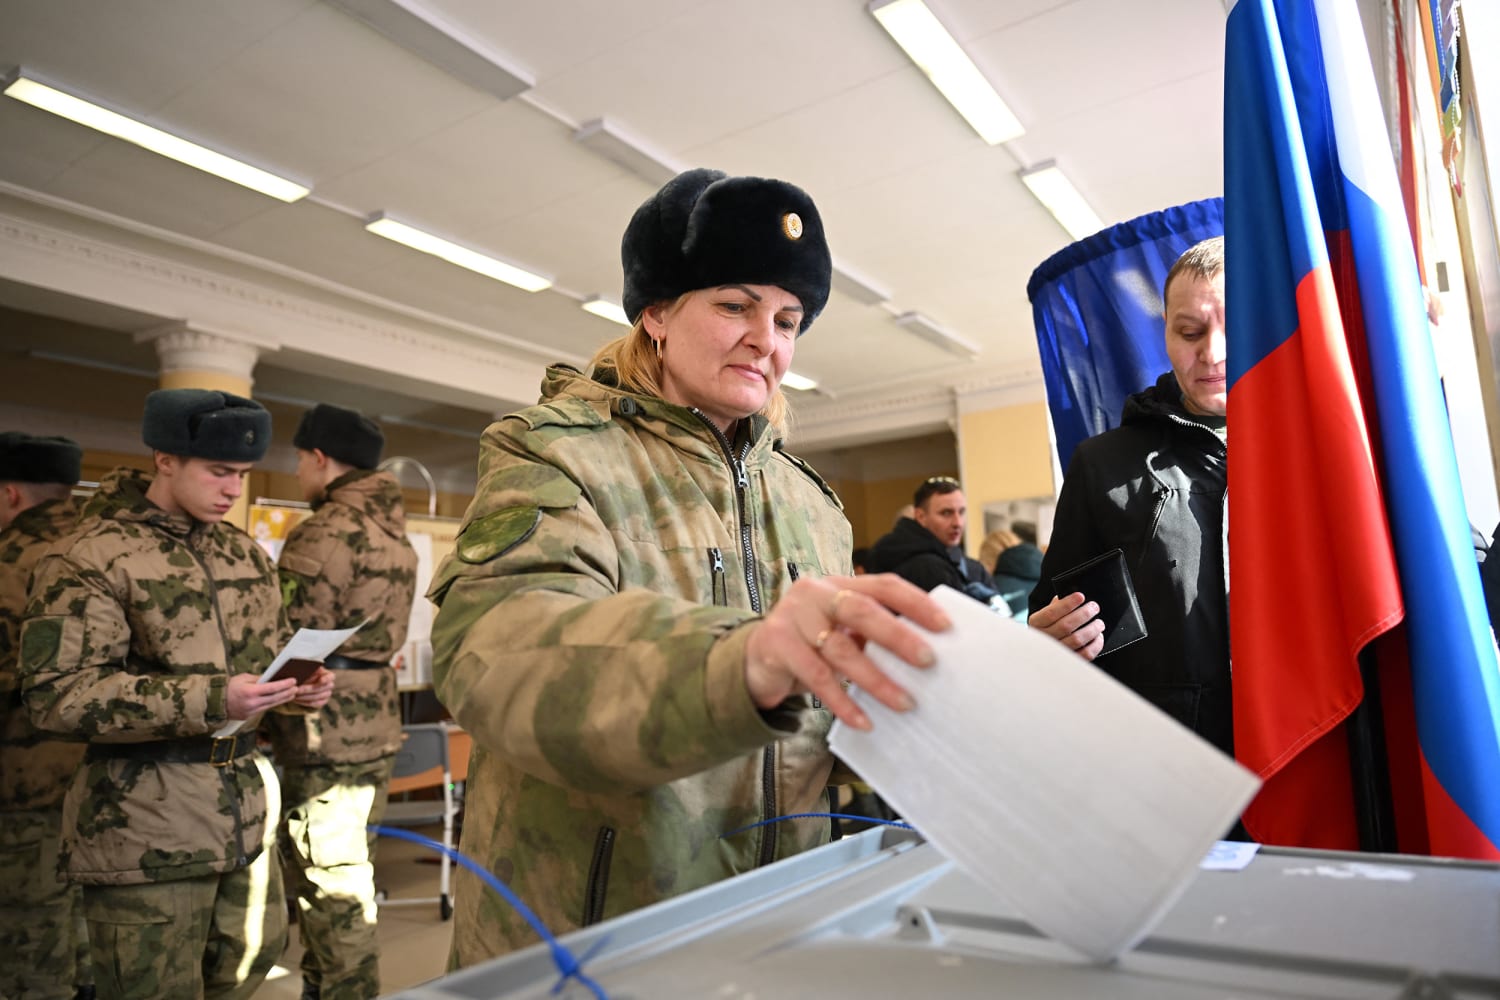 Putin ganará sin oposición en la votación en Moscú